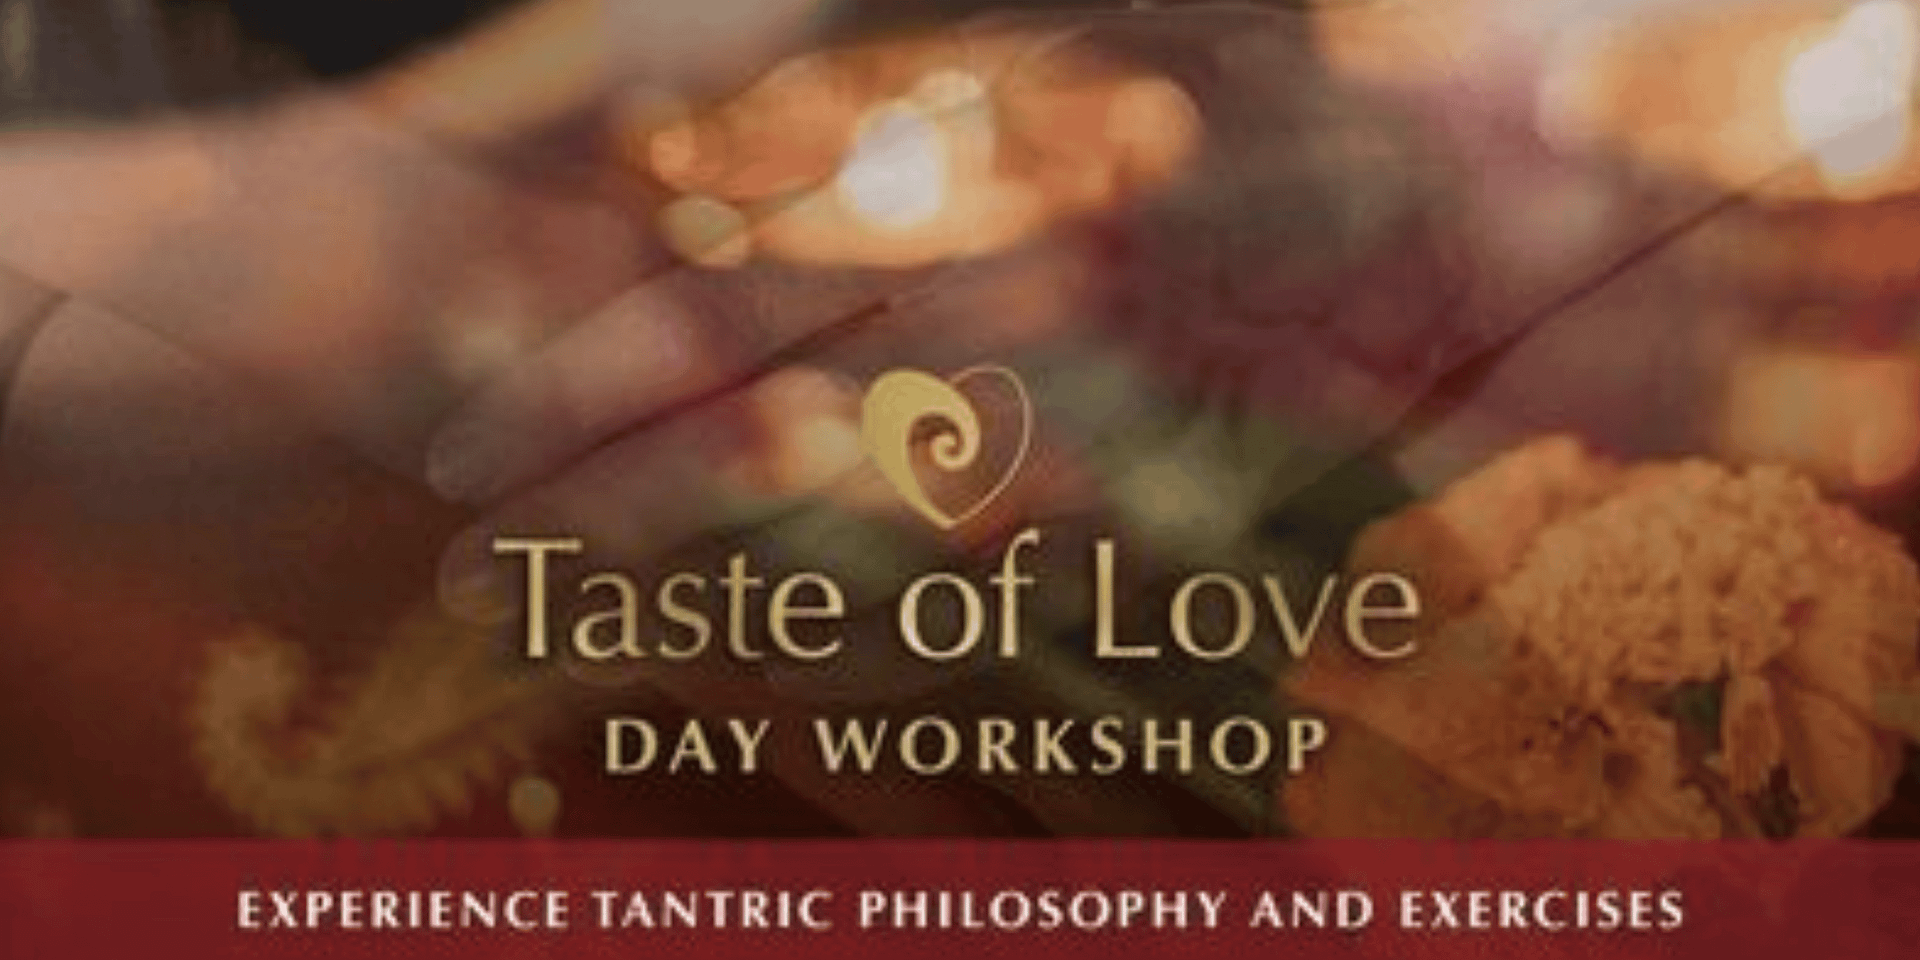 1 day tantra workshop - taste of love